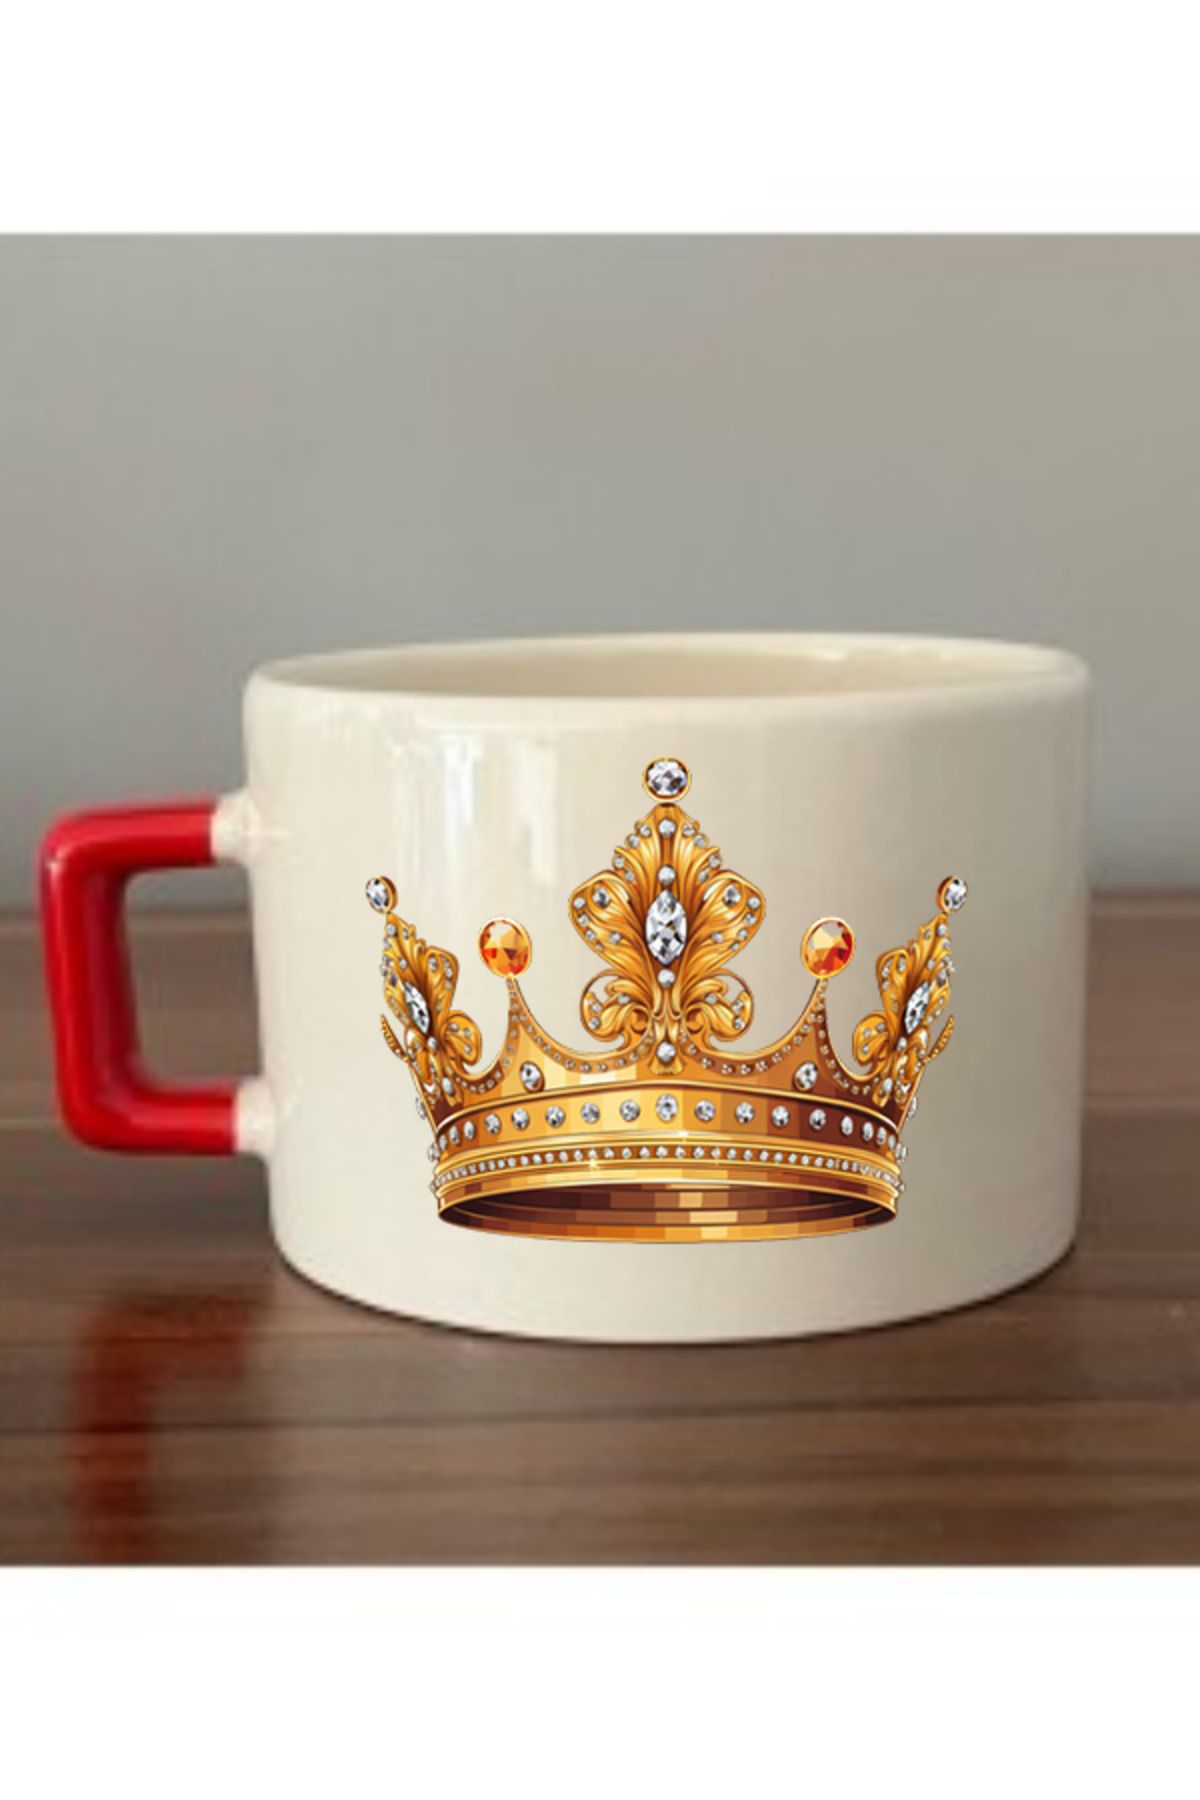 lili hediyelik Kral Tacı Baskılı Kırmızı Kulplu Fincan Seramik Kupa - Seramik Çay, Kahve Hediyelik Bardağı